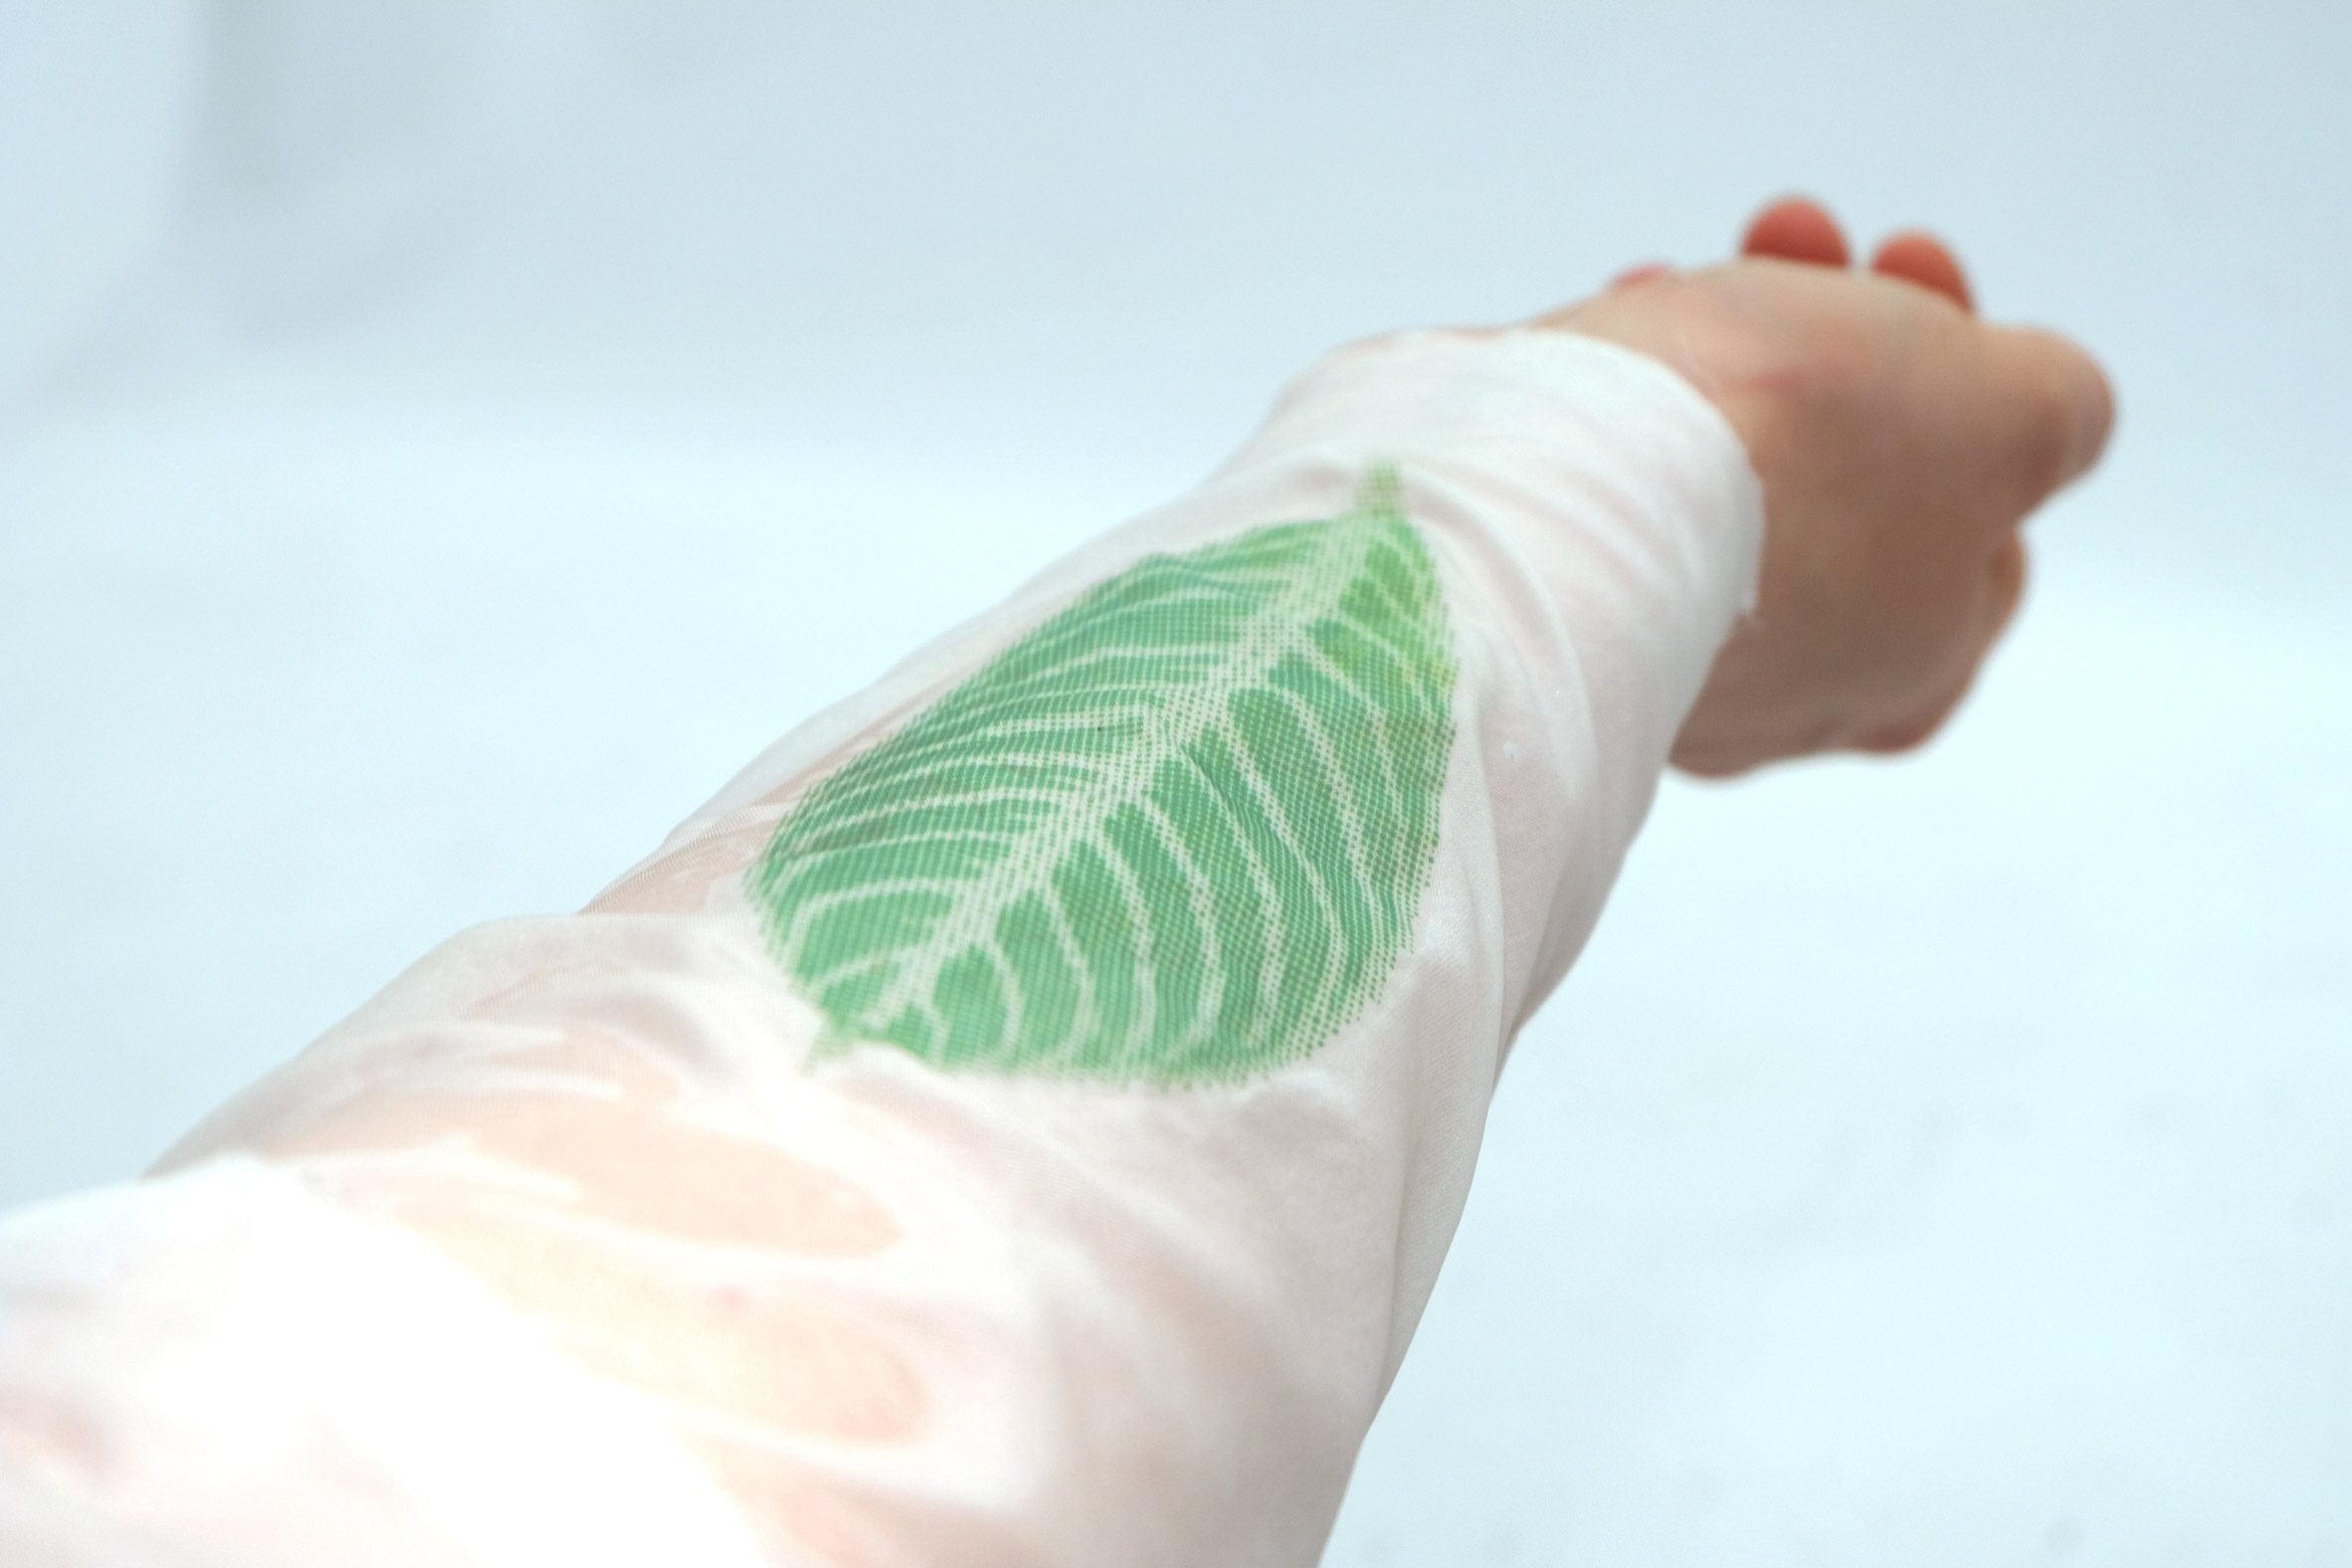 A leaf design on fabric